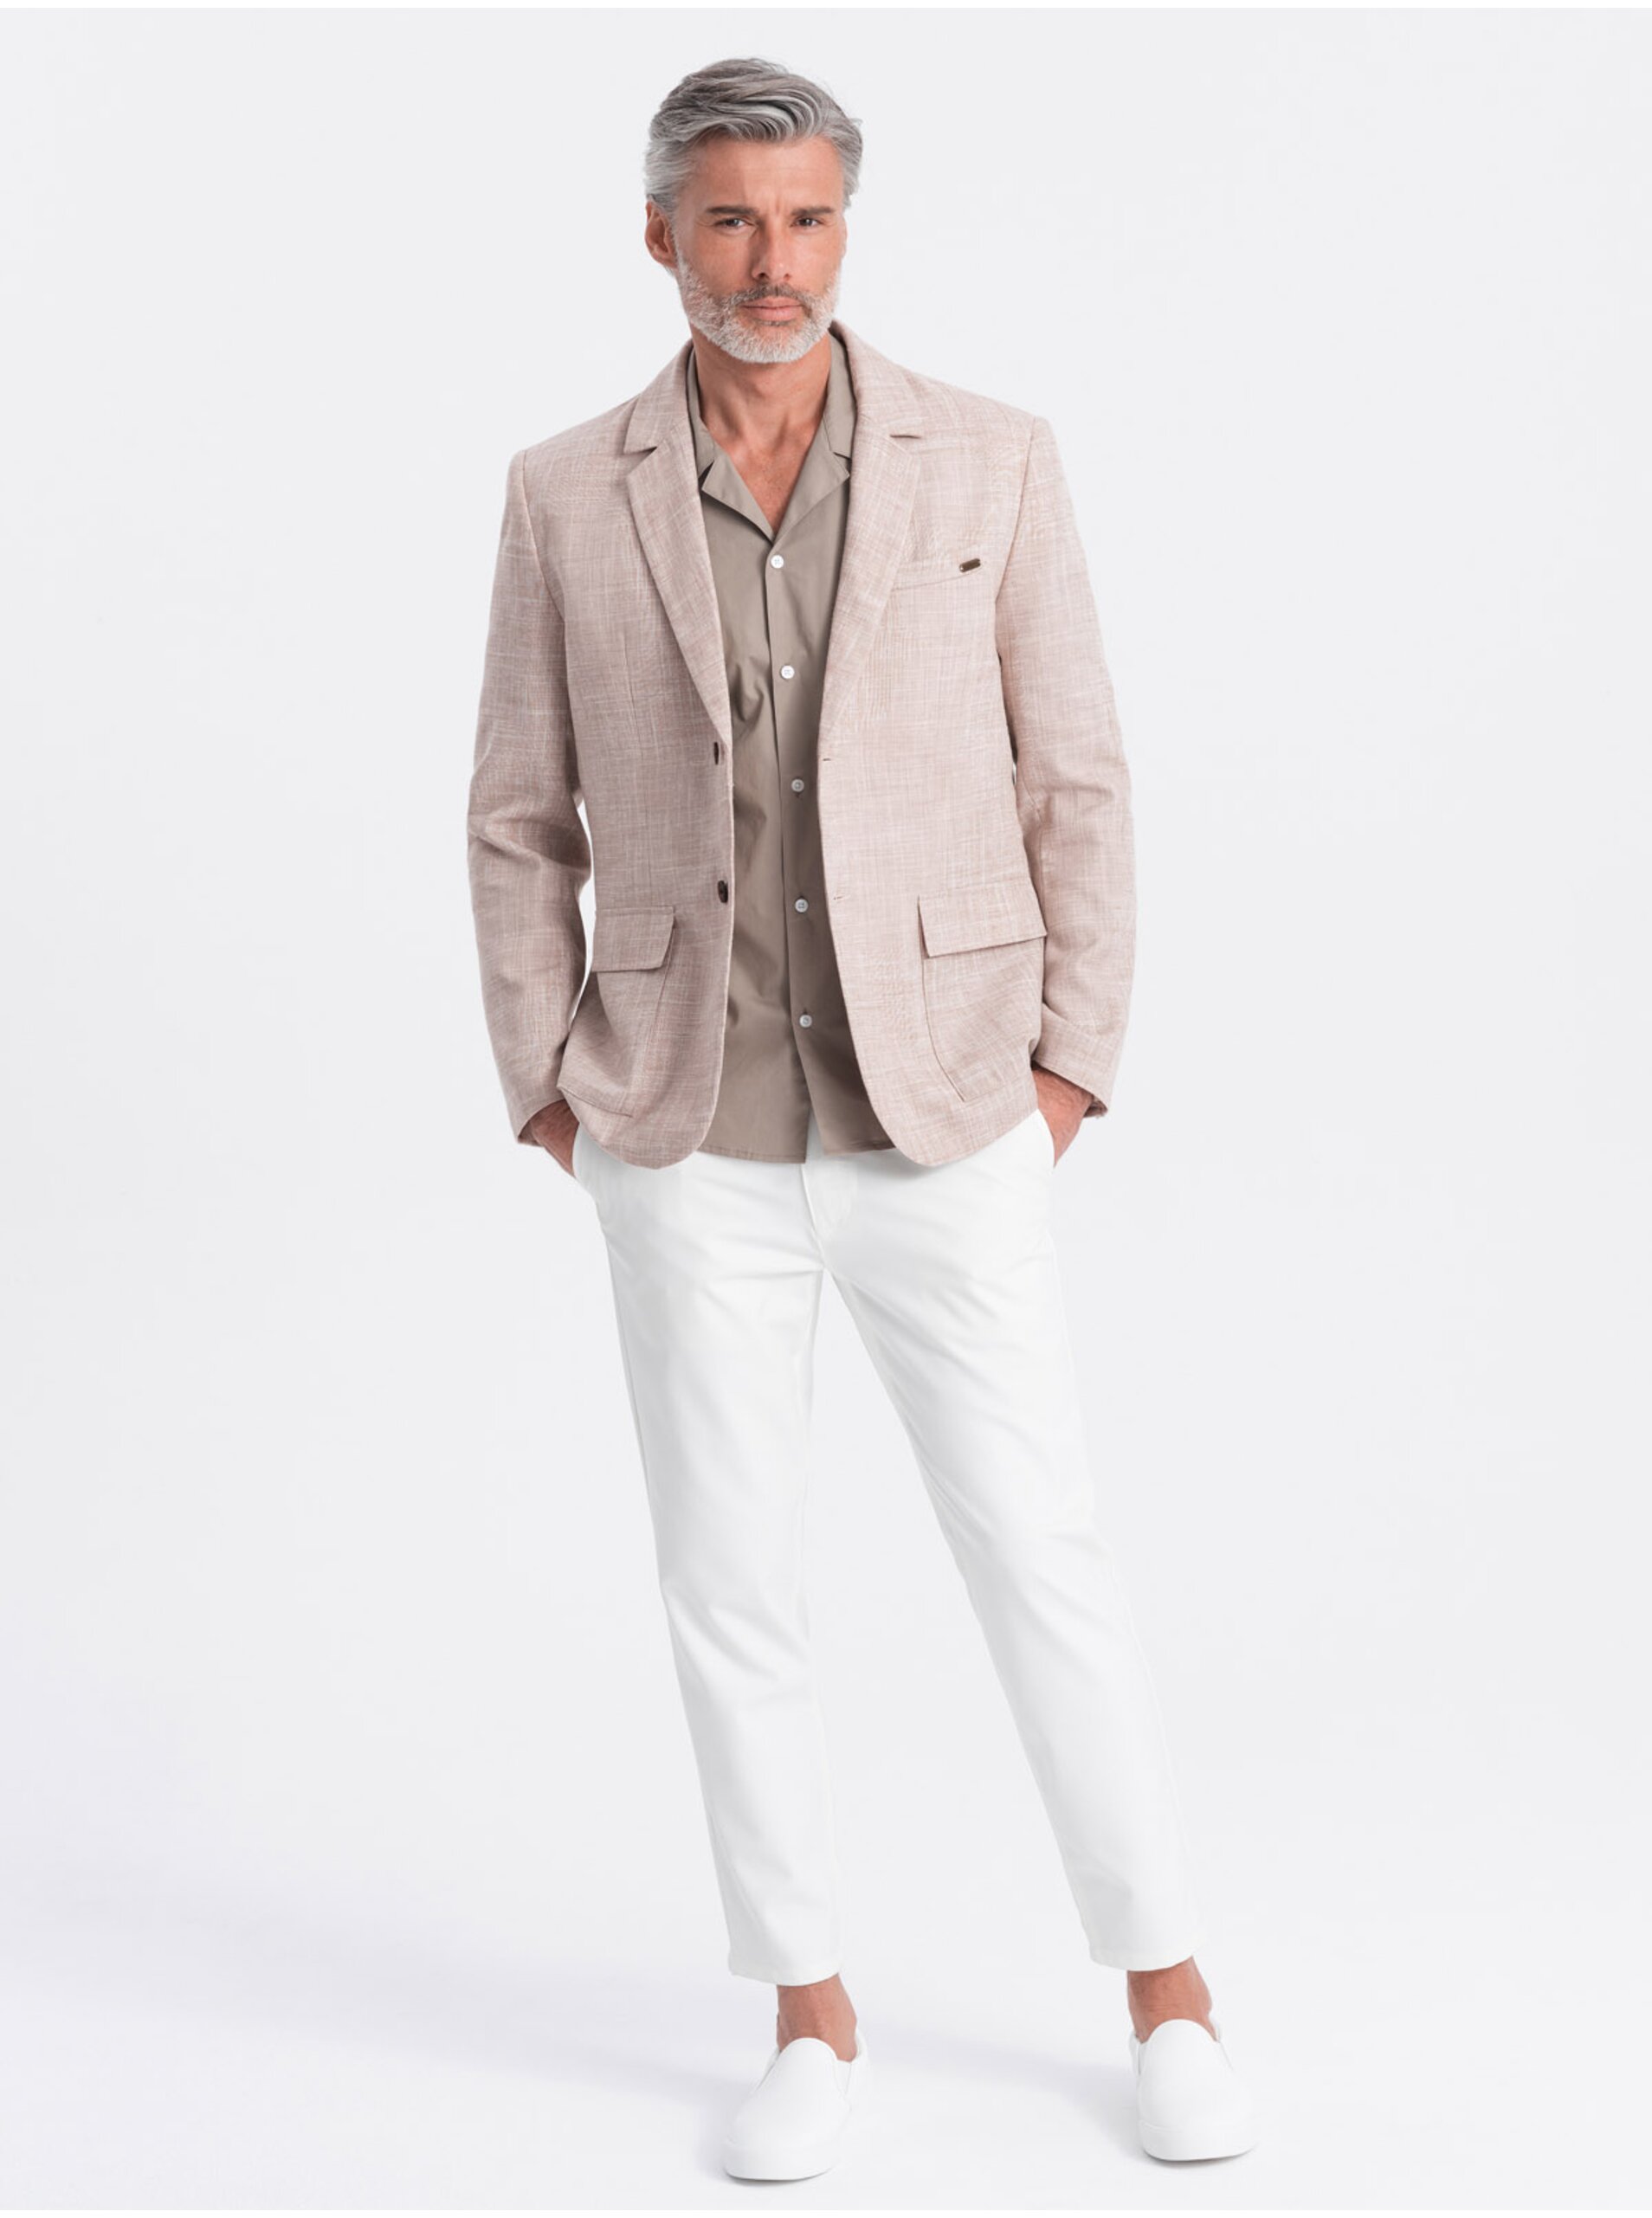 Pánské sako REGULAR střihu s plátnem - světle béžové V2 OM-BLZB-0128 Ombre Clothing